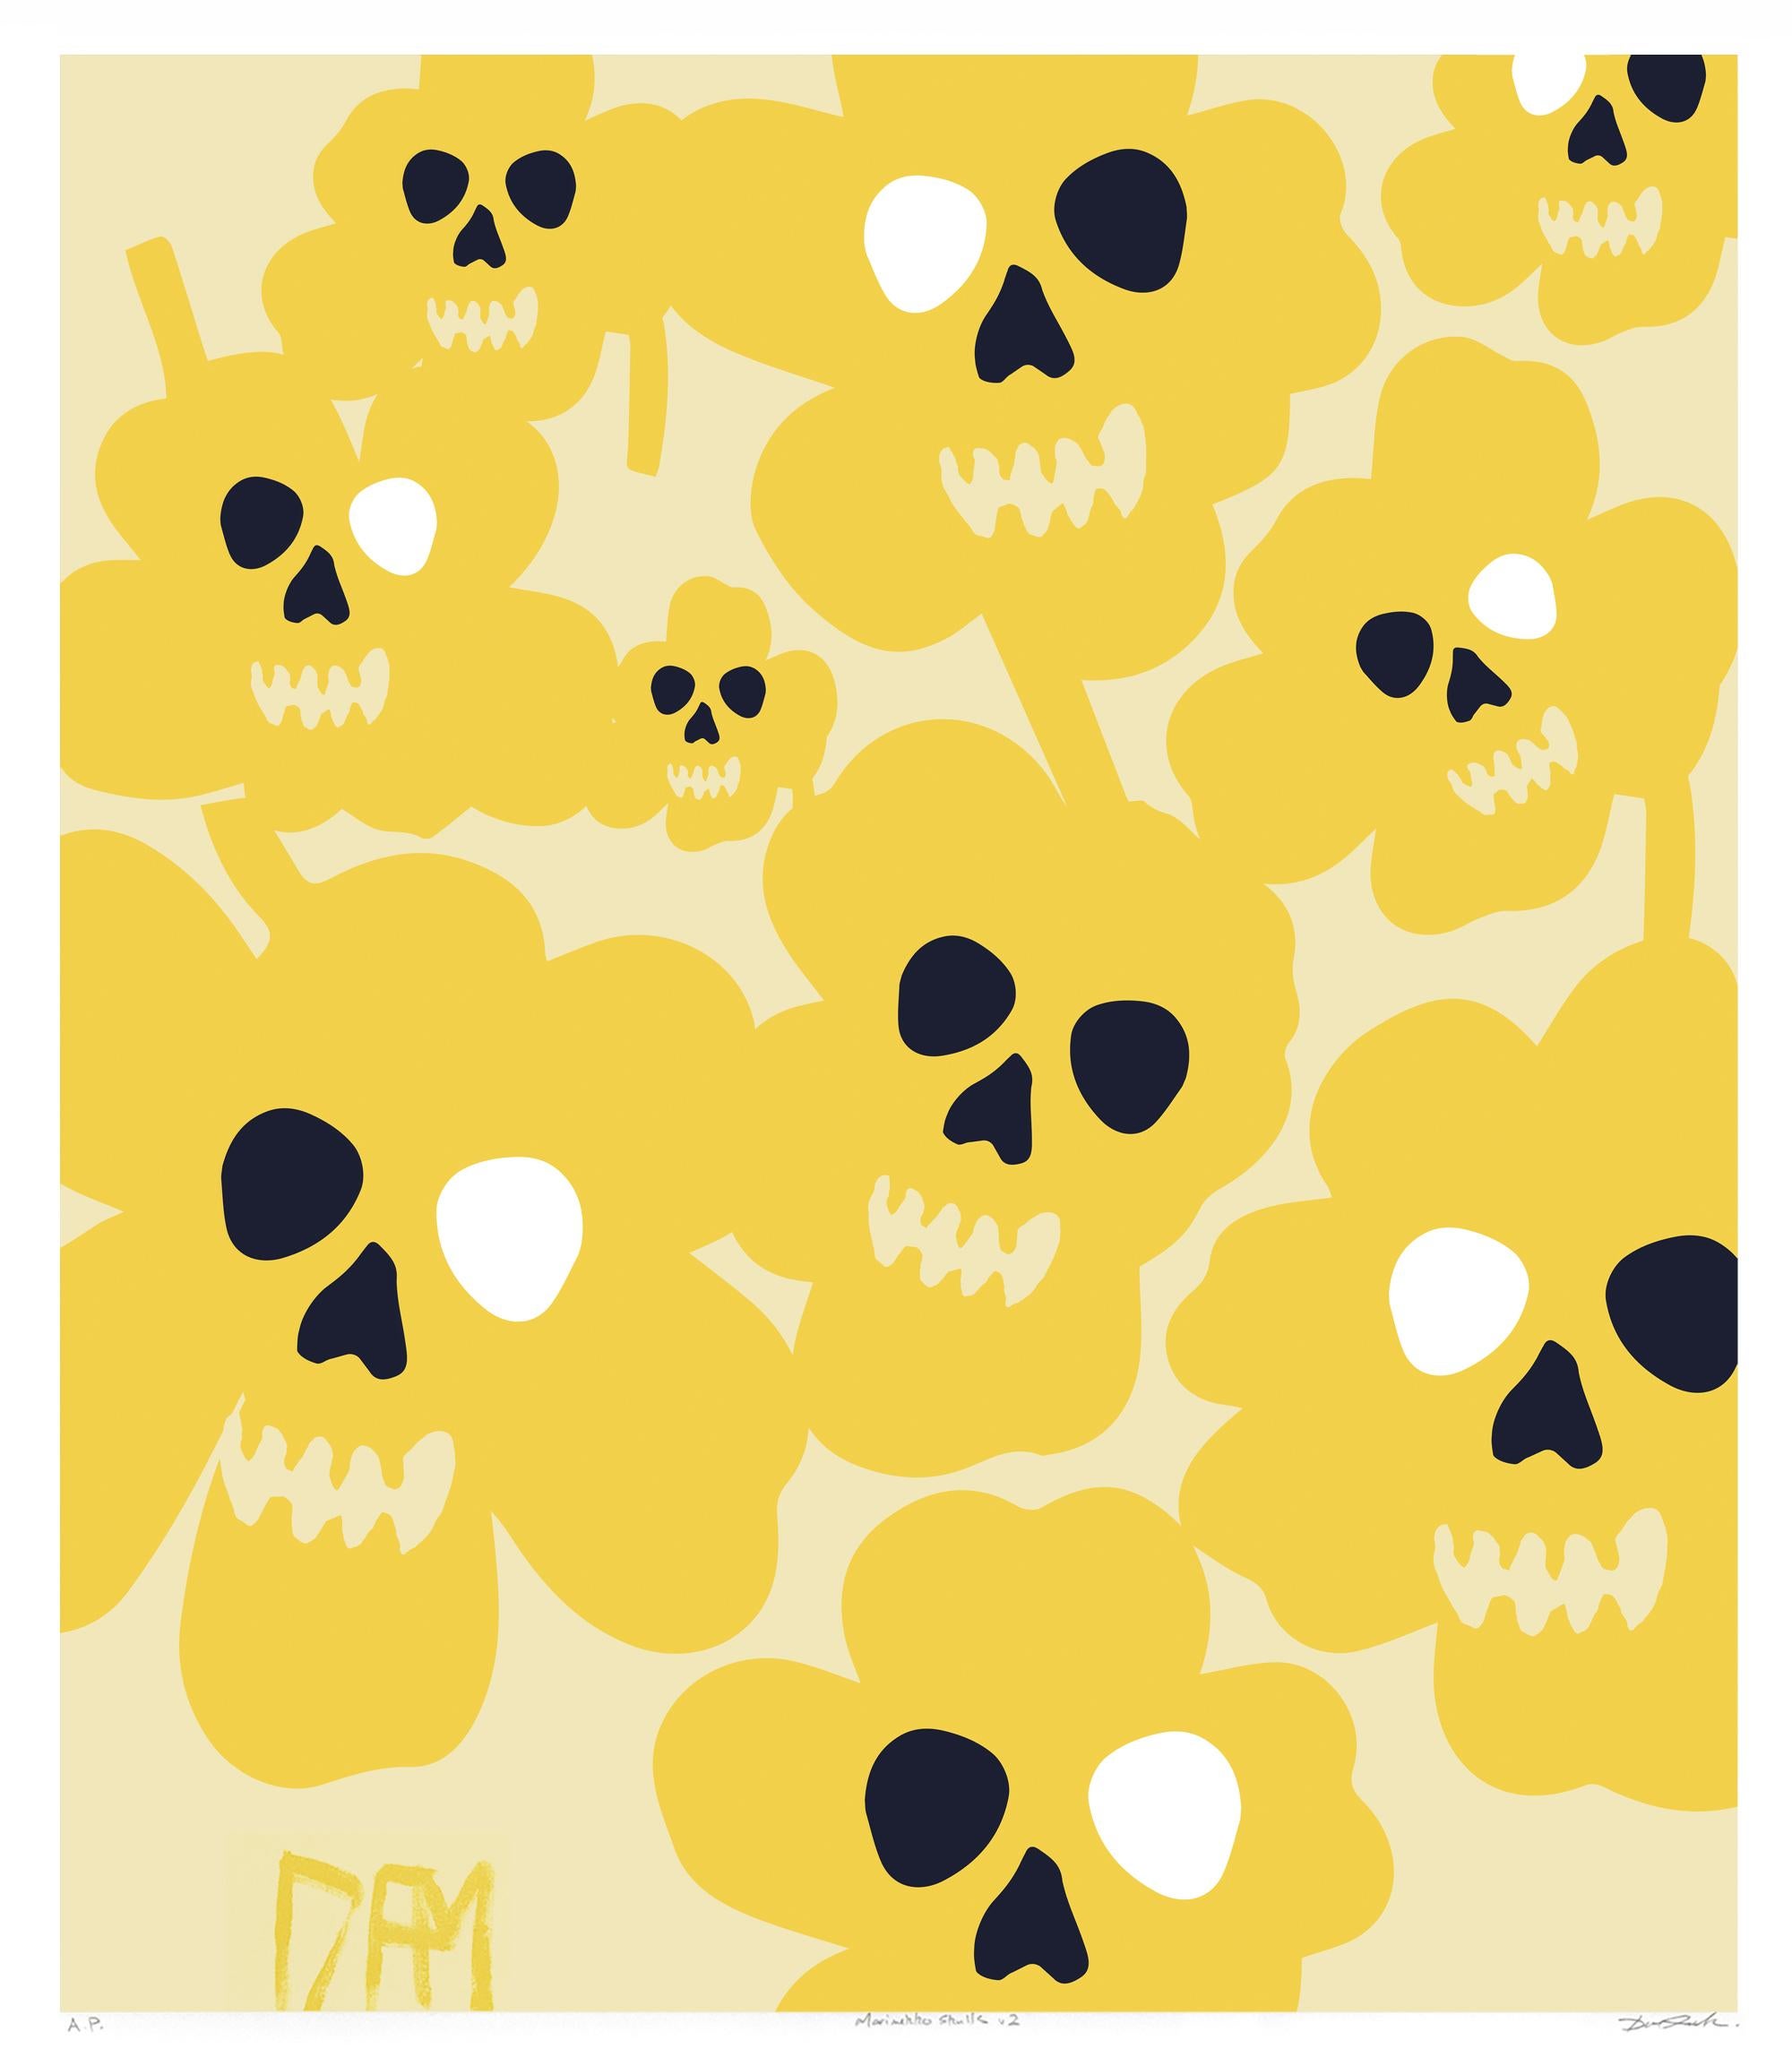 David Fredrik Moussallem - Marimekko flower - street art pop art yellow abstract print For Sale at 1stDibs | marimekko art prints, pop art skulls, davide marimekko